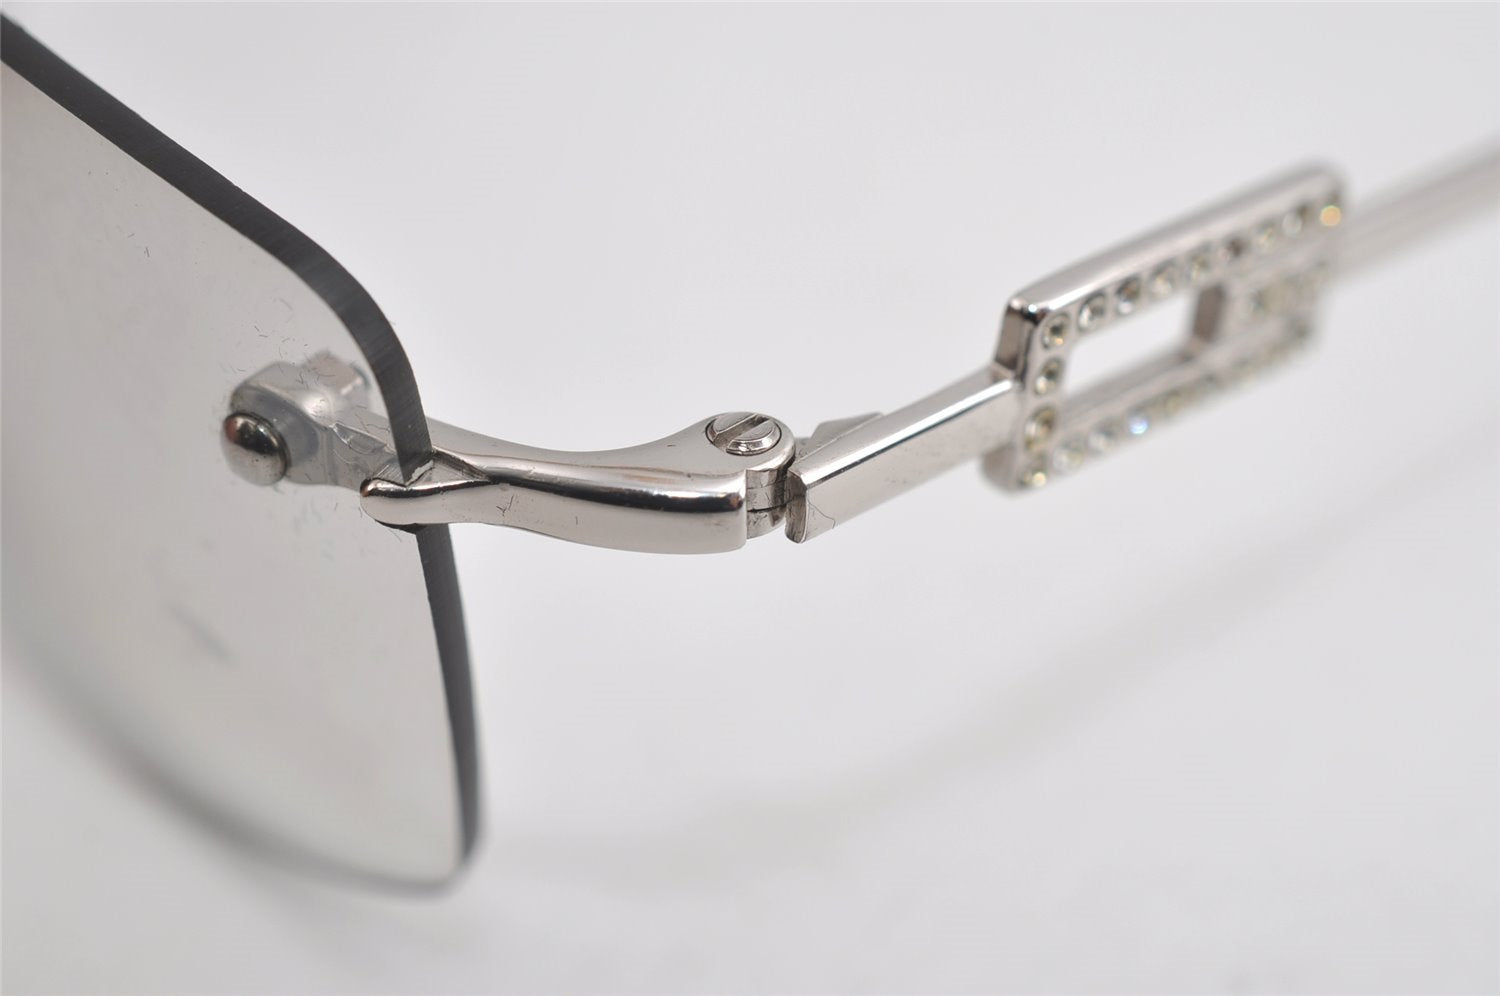 Authentic GUCCI Sunglasses Rhinestone 1784/STRASS Titanium Silver 4588I